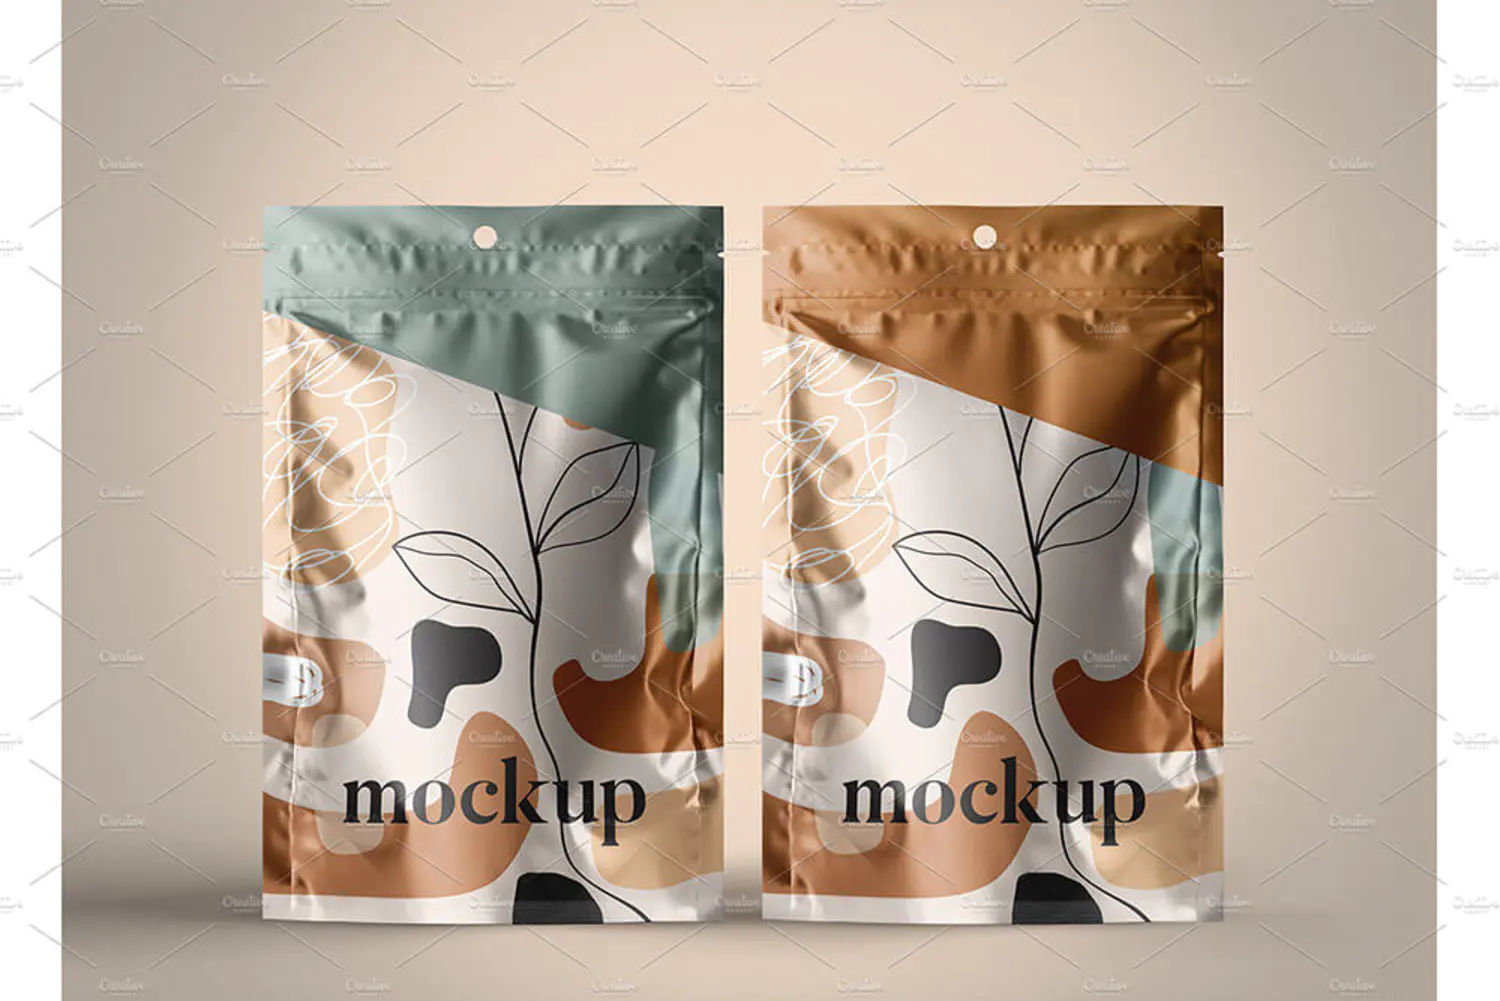 5 零食袋包装袋自立袋设计样机 (psd)SACHET Mockups 6451335